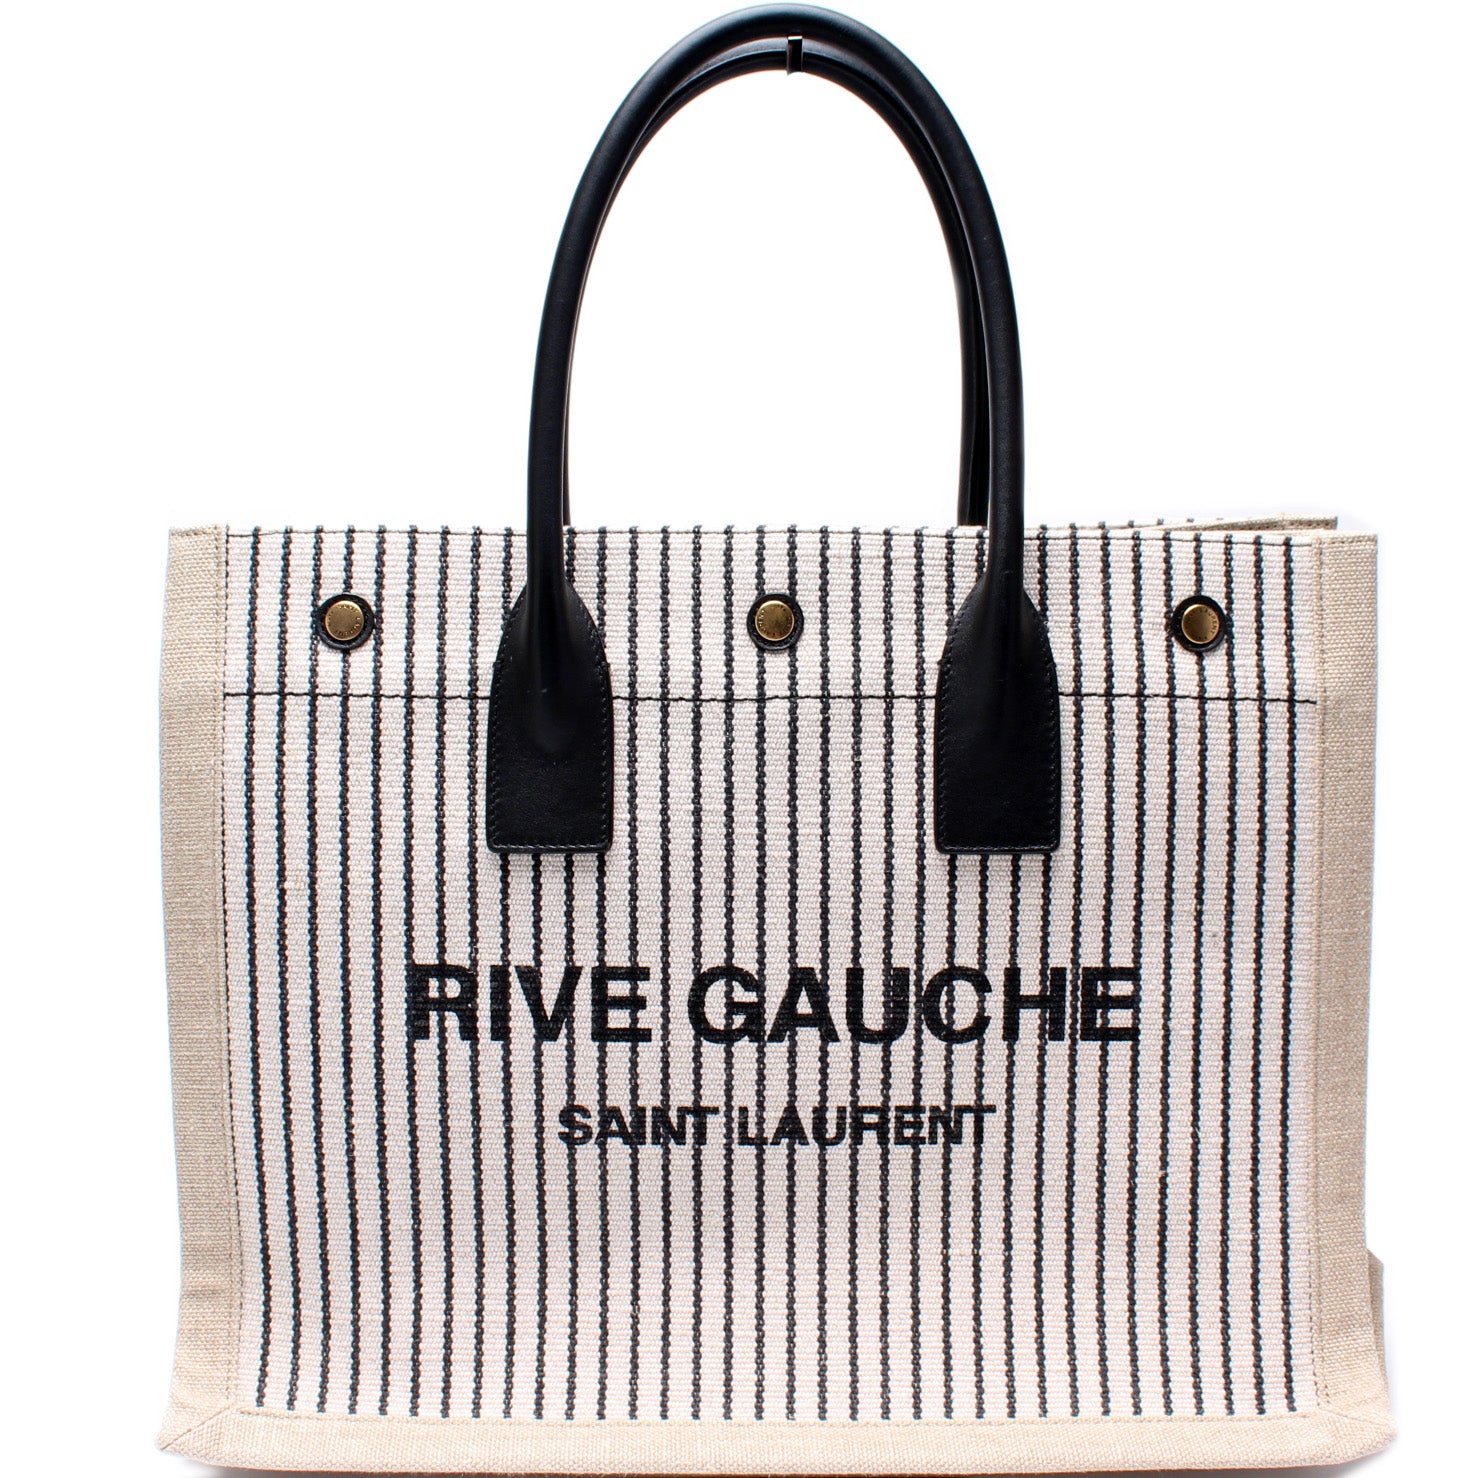 Saint Laurent Rive Gauche Small Linen Tote Bag Gray/White